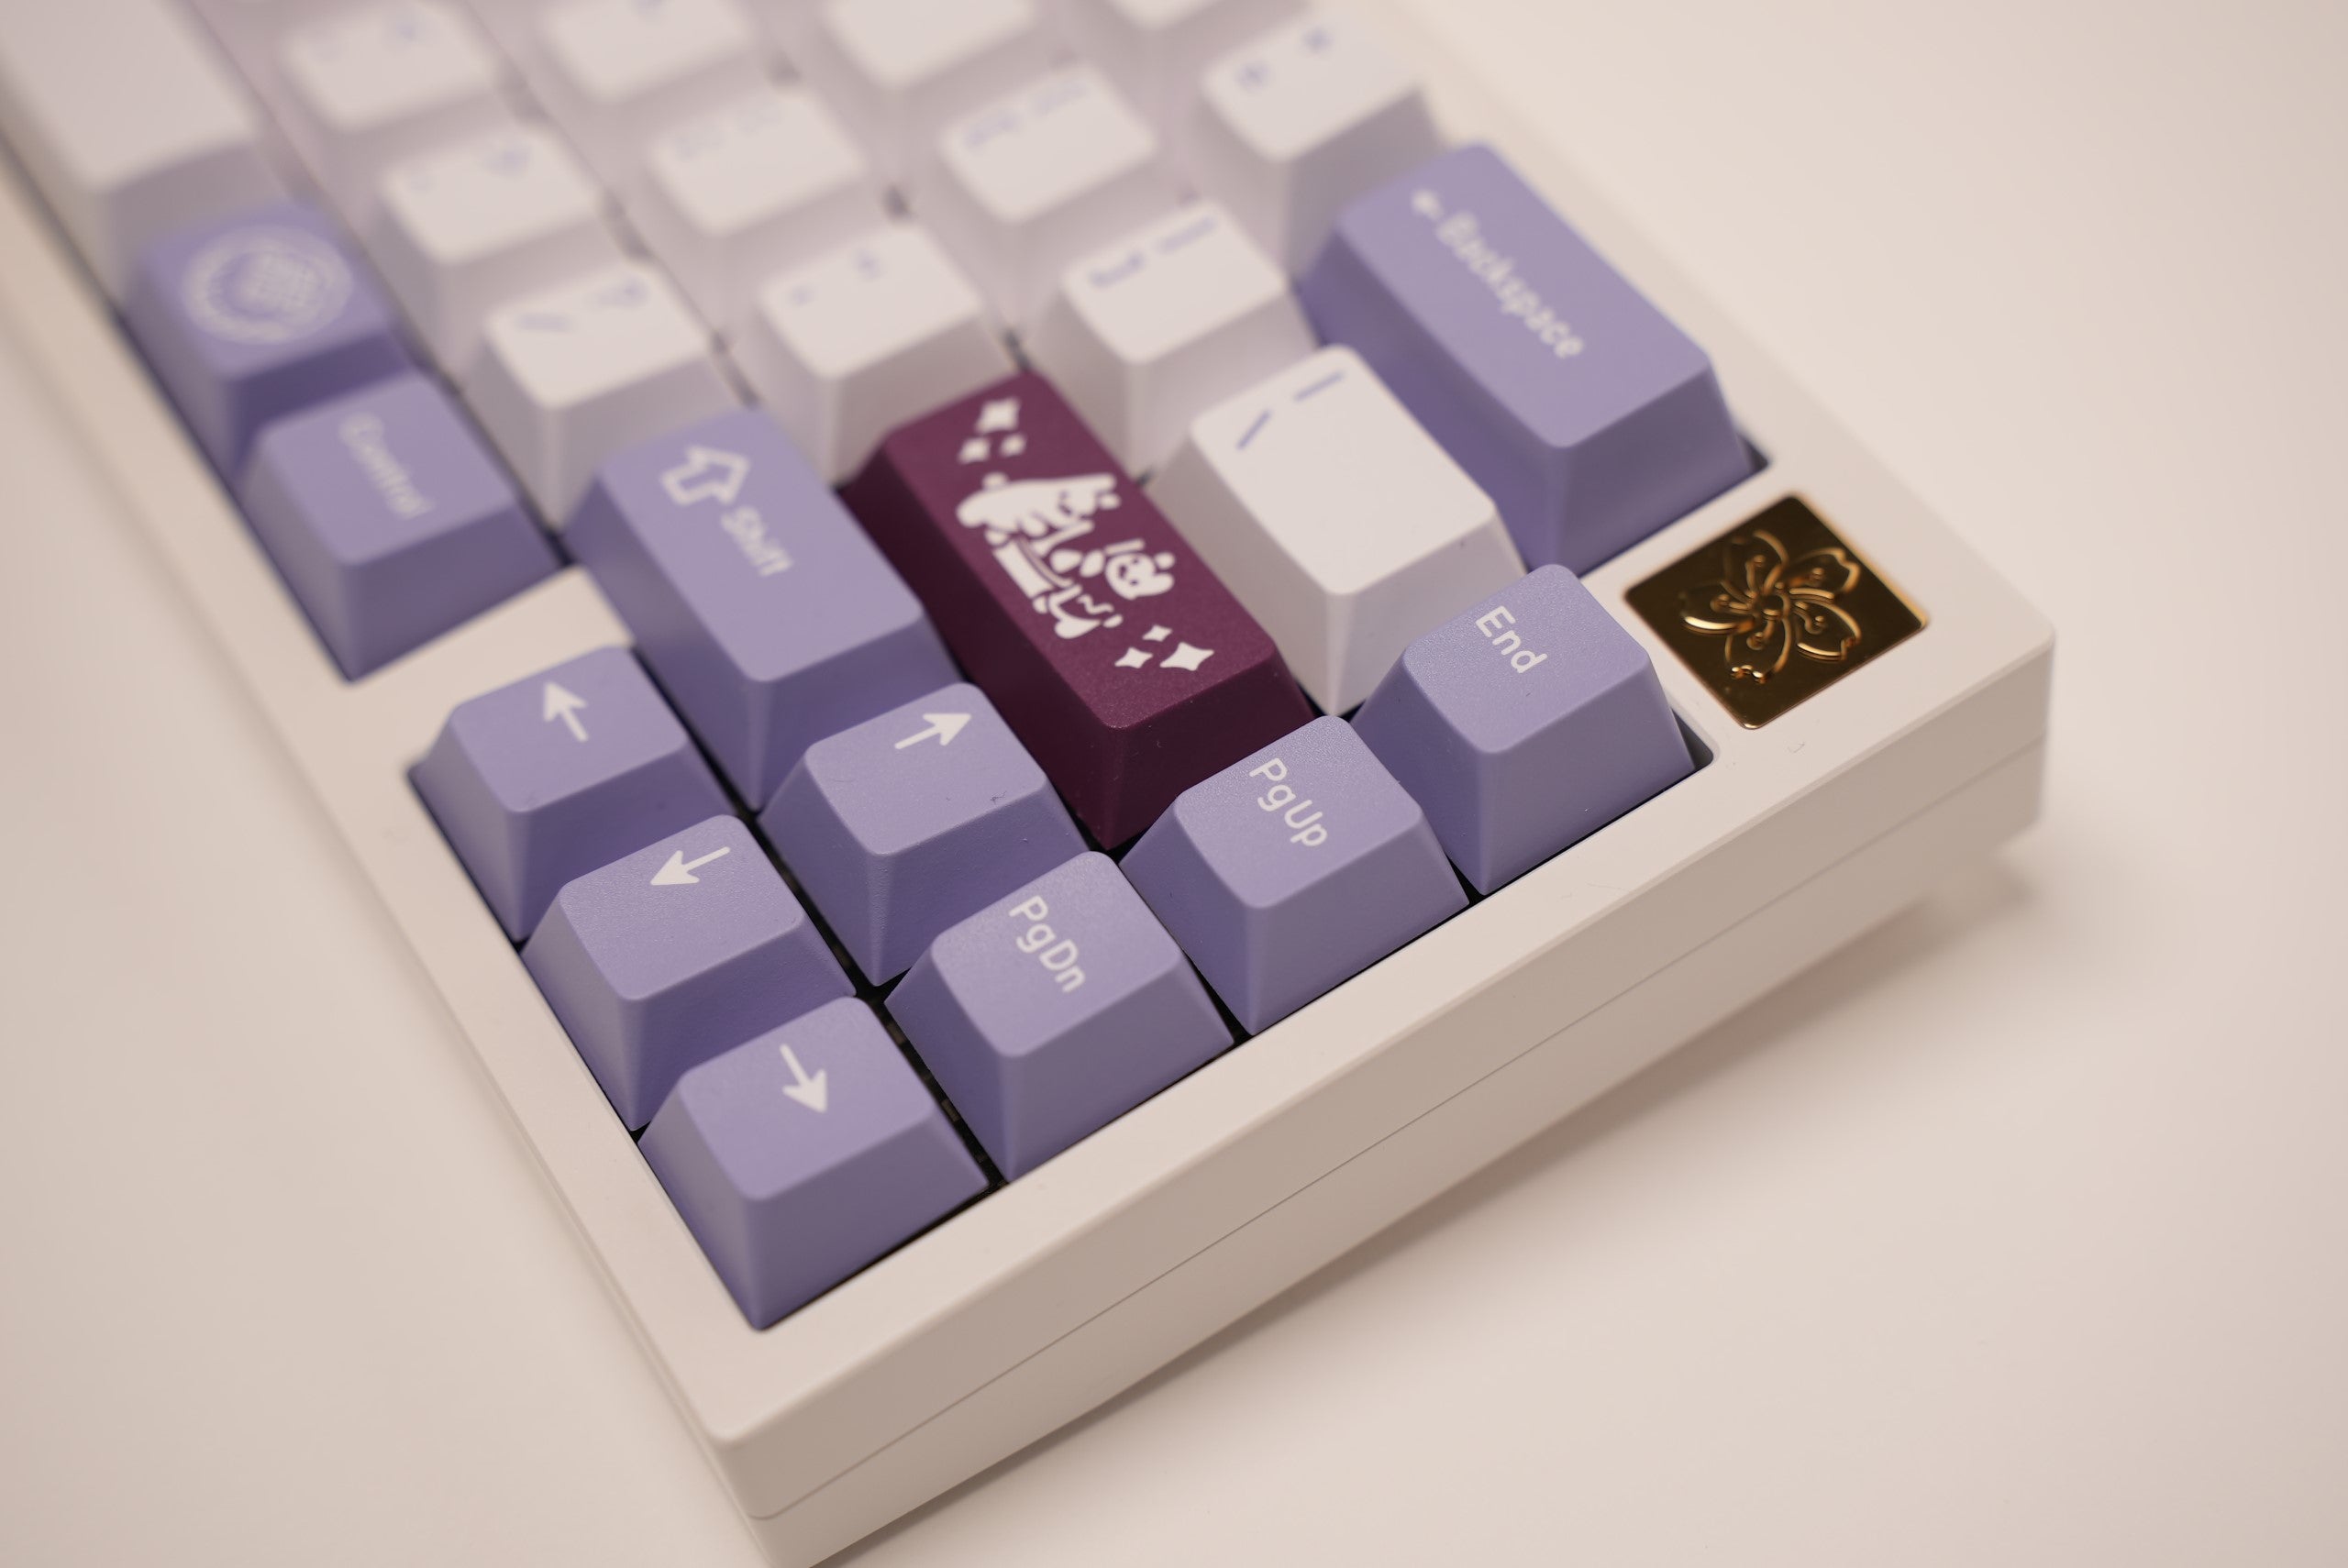 Fuji 65v2 Swirl Keyboard - Snow White